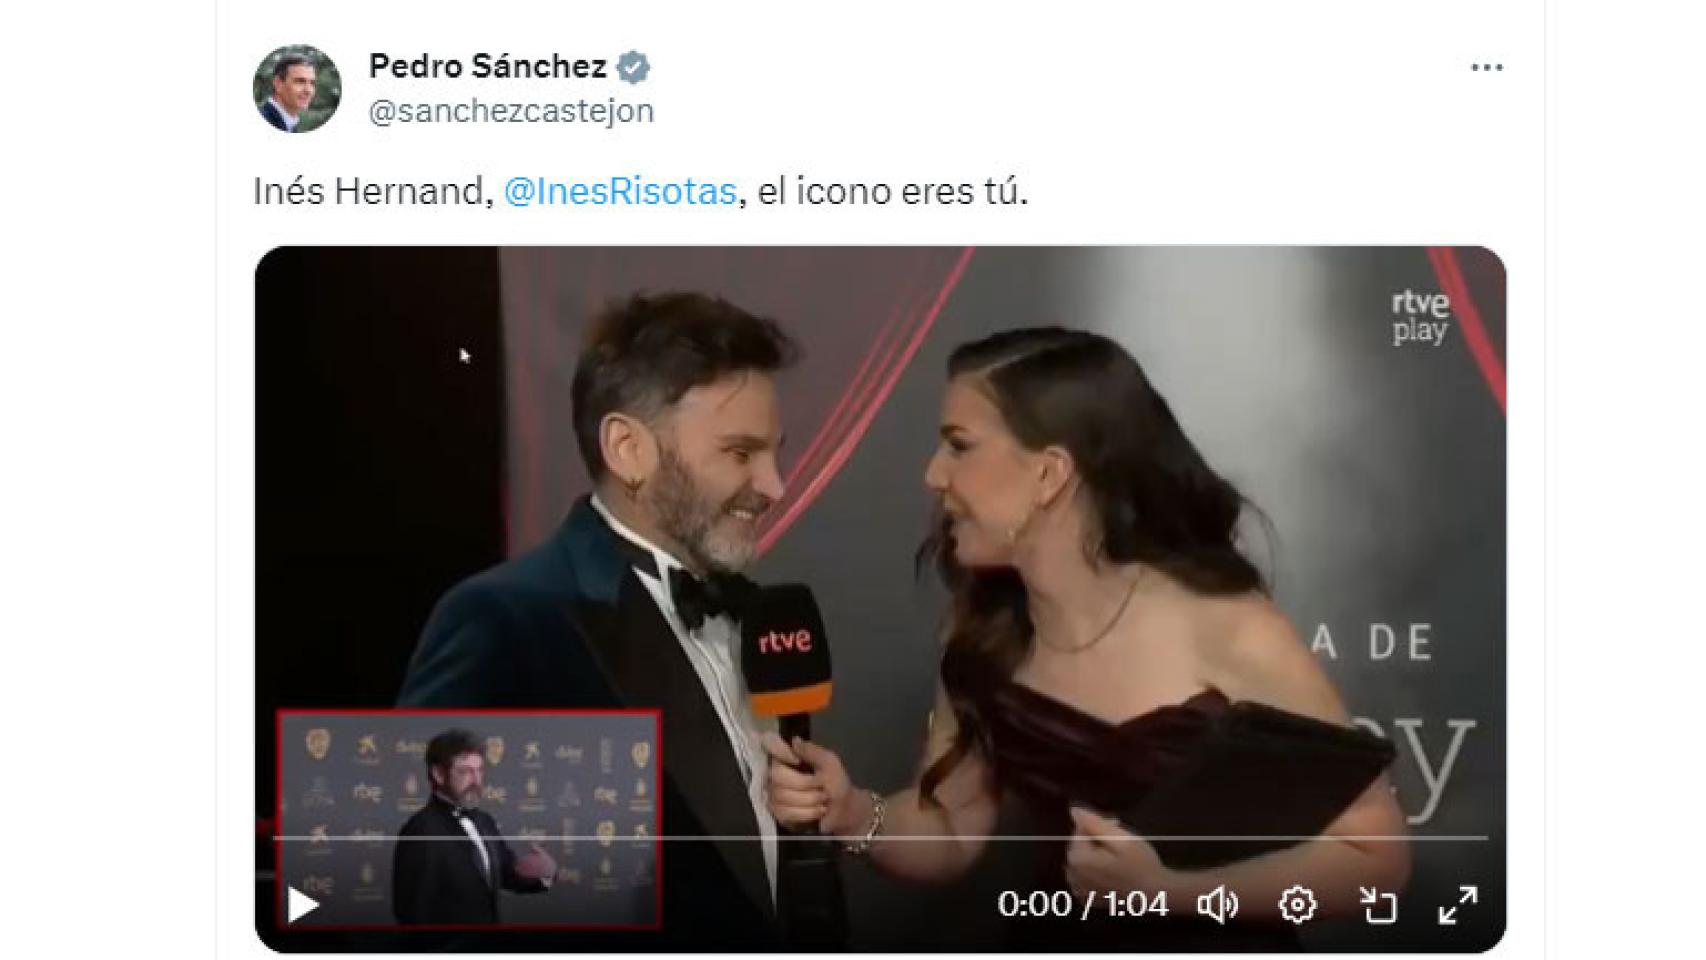 Captura del tuit de Pedro Sánchez a Inés Hernand.